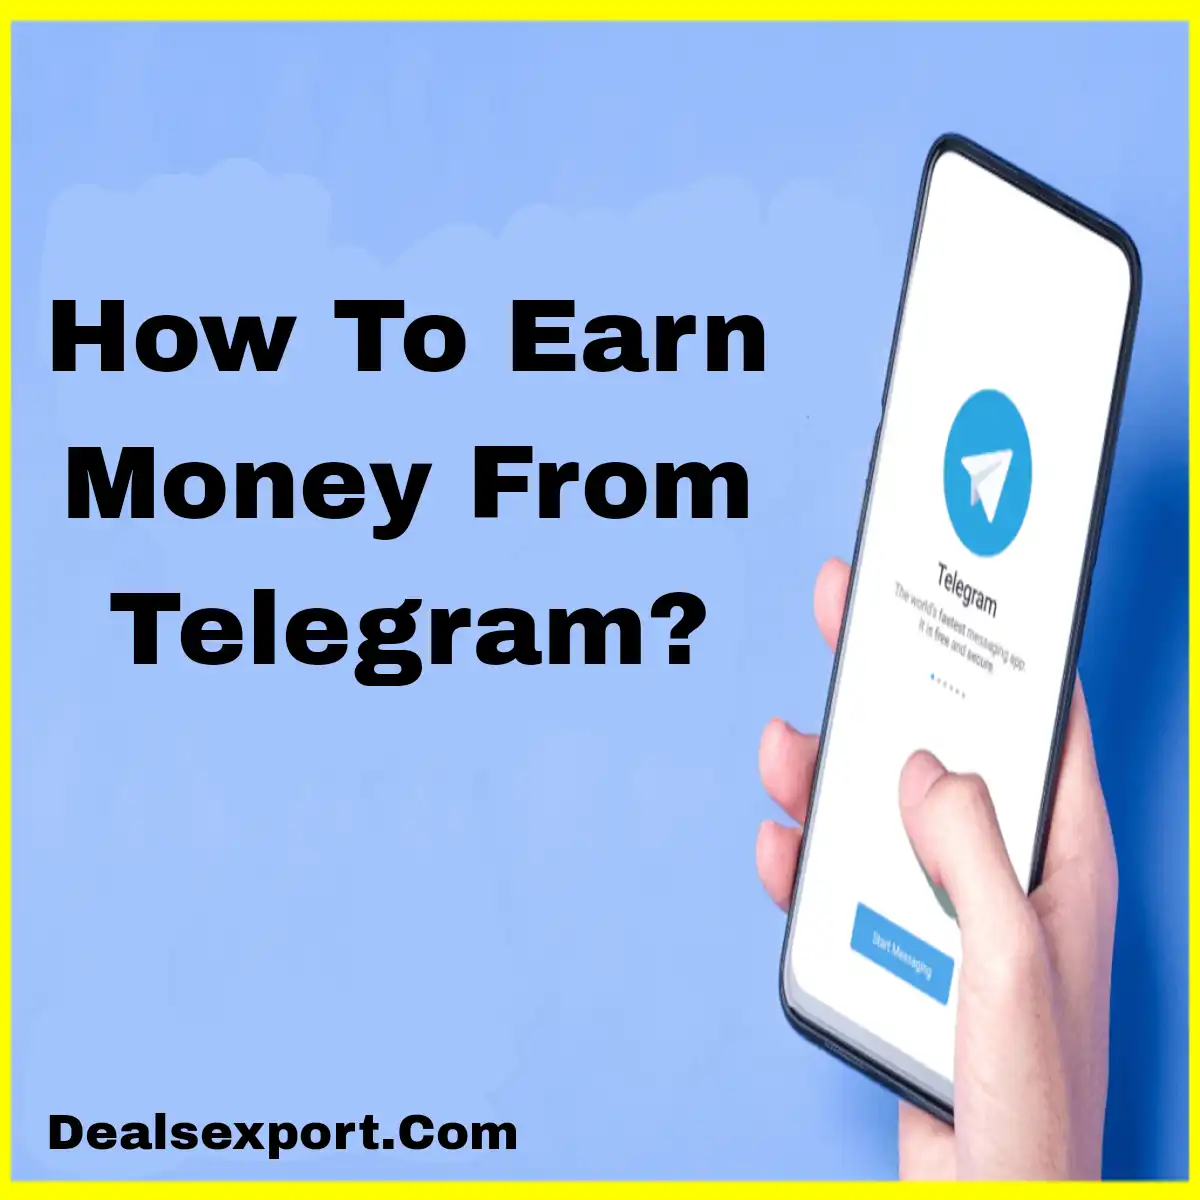 How To Earn Money From Telegram